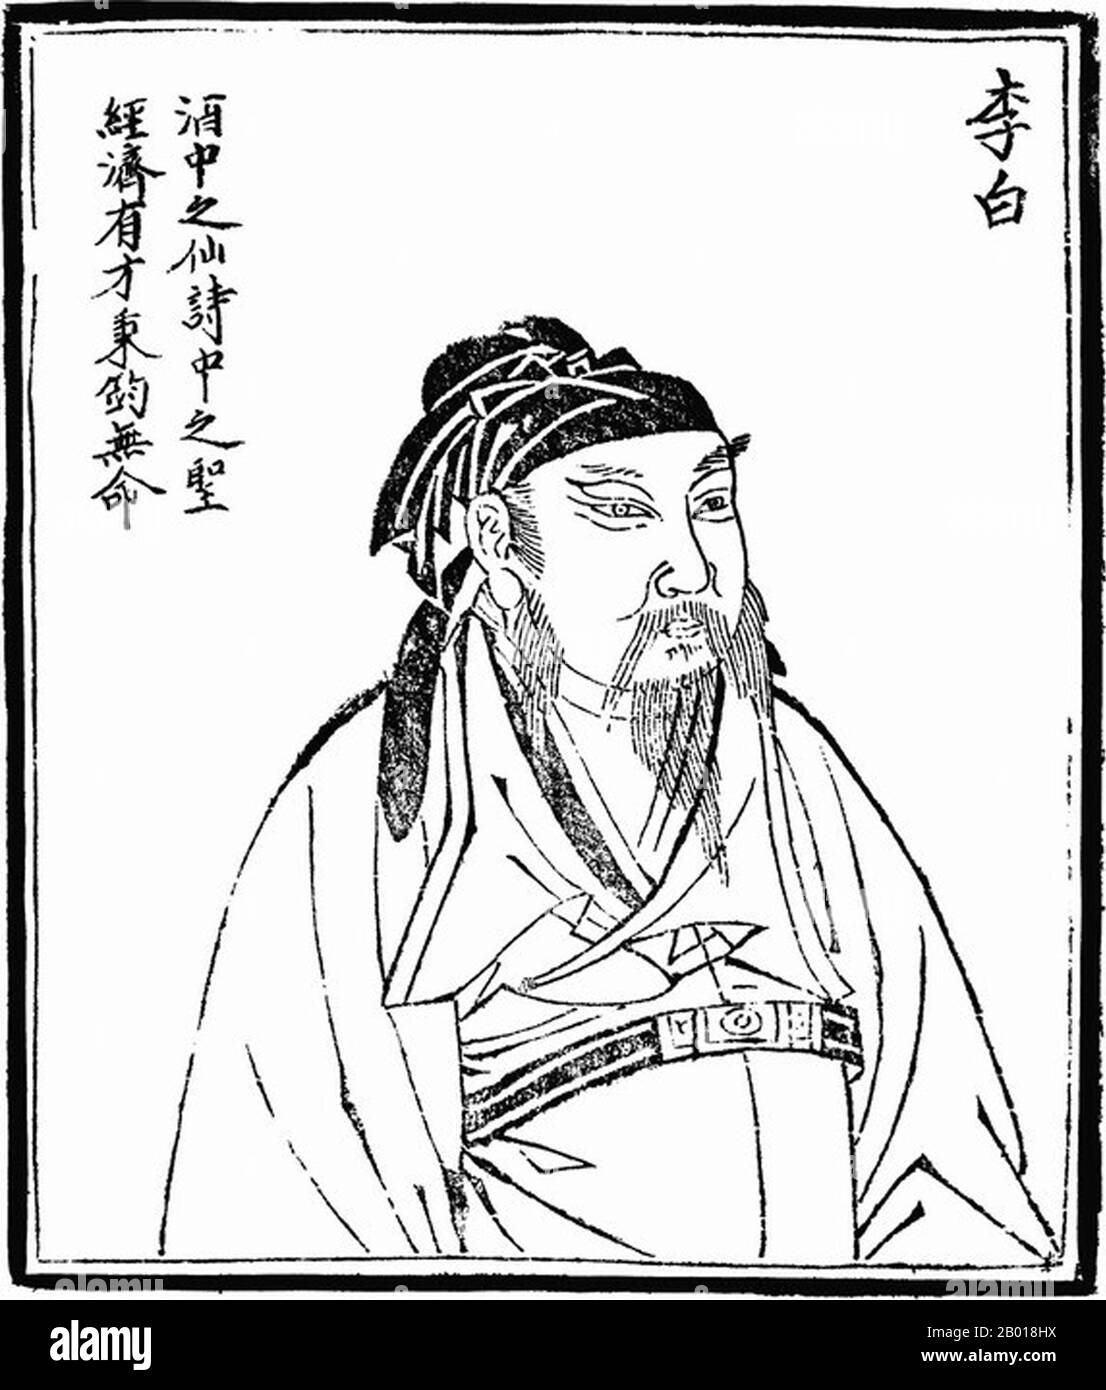 Li Bai (701-762), im Westen weithin bekannt als Li Po, chinesischer Dichter der Tang-Dynastie (618-907). Holzschnitt aus 'Bilder alter Menschen in der Geschichte', c. 1498. Li Bai, auch bekannt als Li Bo und Höflichkeitsname Taibai und Kunstname Qinglian Jushi, gilt im Allgemeinen als einer der größten Dichter in Chinas Tang-Zeit, die oft als Chinas "goldenes Zeitalter" der Poesie bezeichnet wird. Ihm werden etwa tausend existierende Gedichte zugeschrieben, aber die Echtheit vieler dieser Gedichte ist ungewiss. 34 seiner Gedichte sind in der populären Anthologie „Three Hundred Tang Poems“ enthalten. Stockfoto